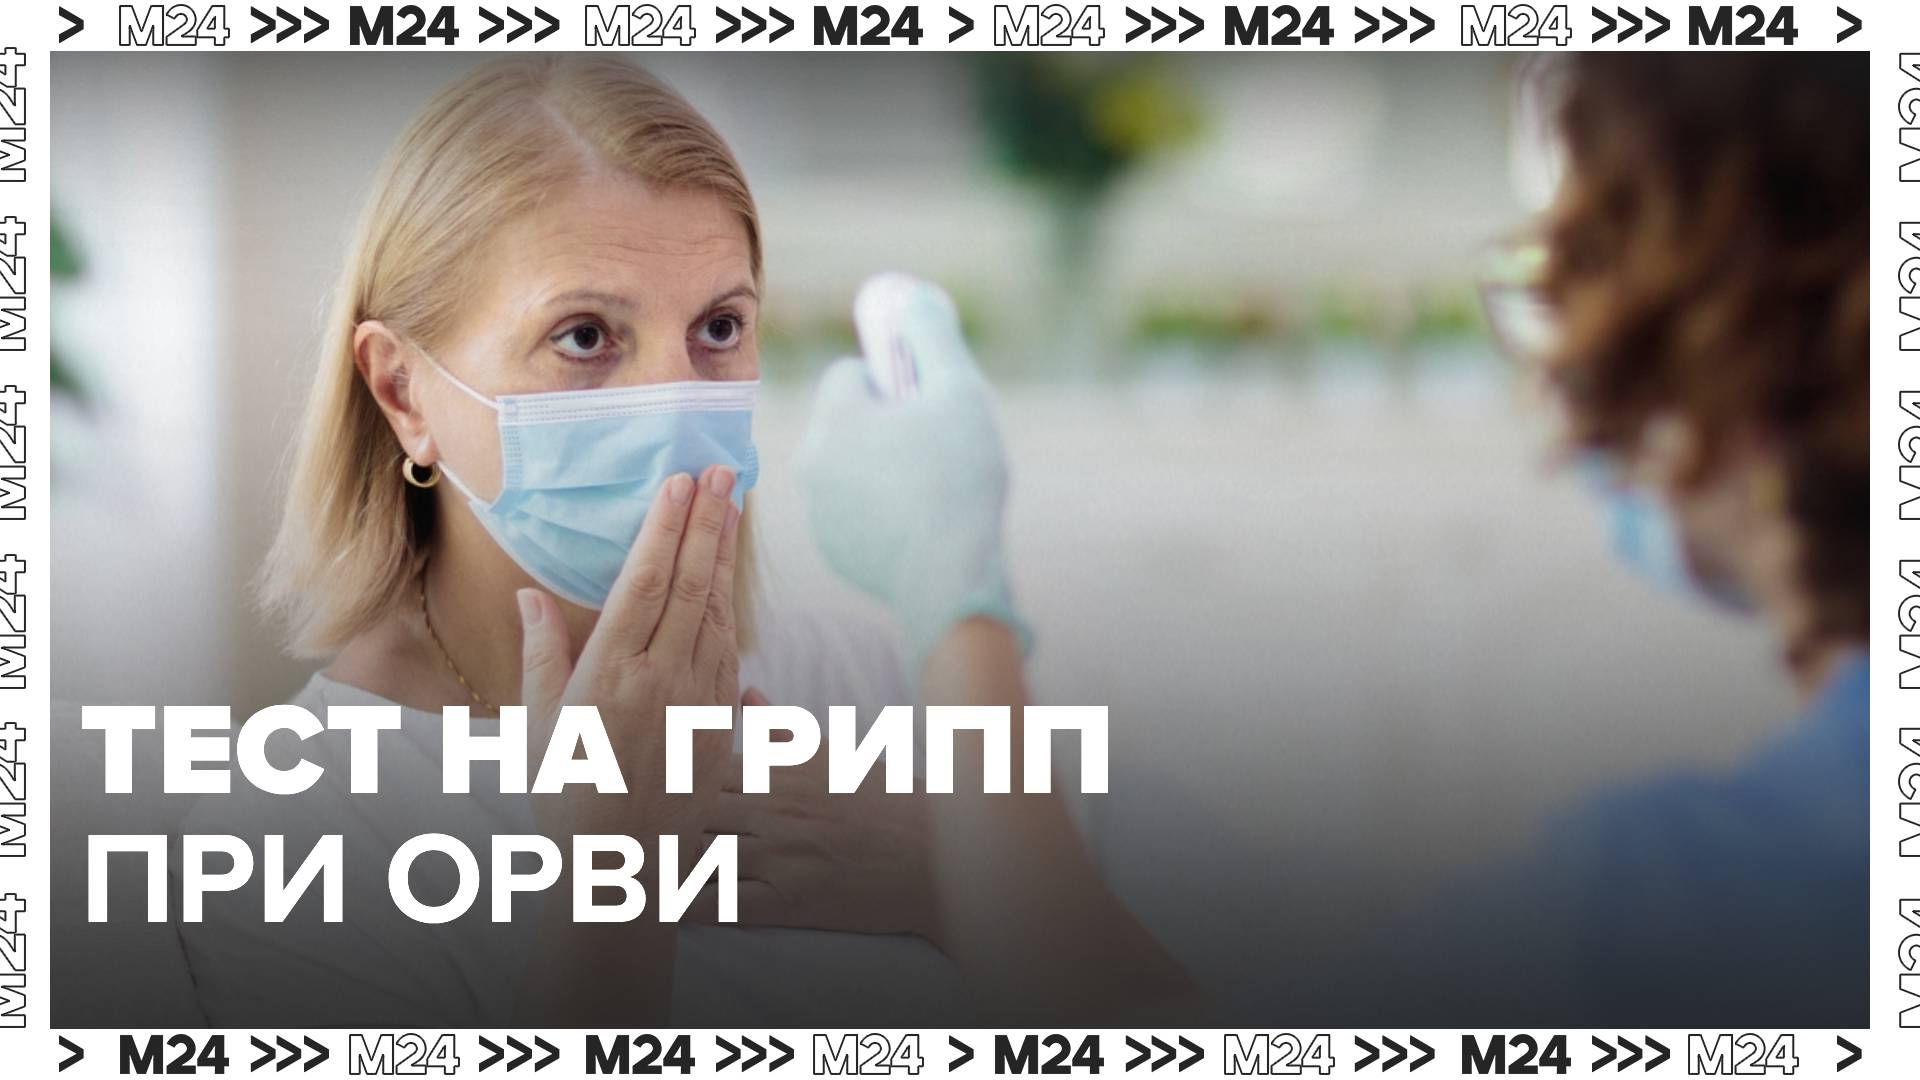 Орви в москве 2024. Исследование гриппа. ОРВИ сейчас в Москве симптомы. Пациенты с признаками ОРВИ. Пандемия ОРВИ И гриппа.